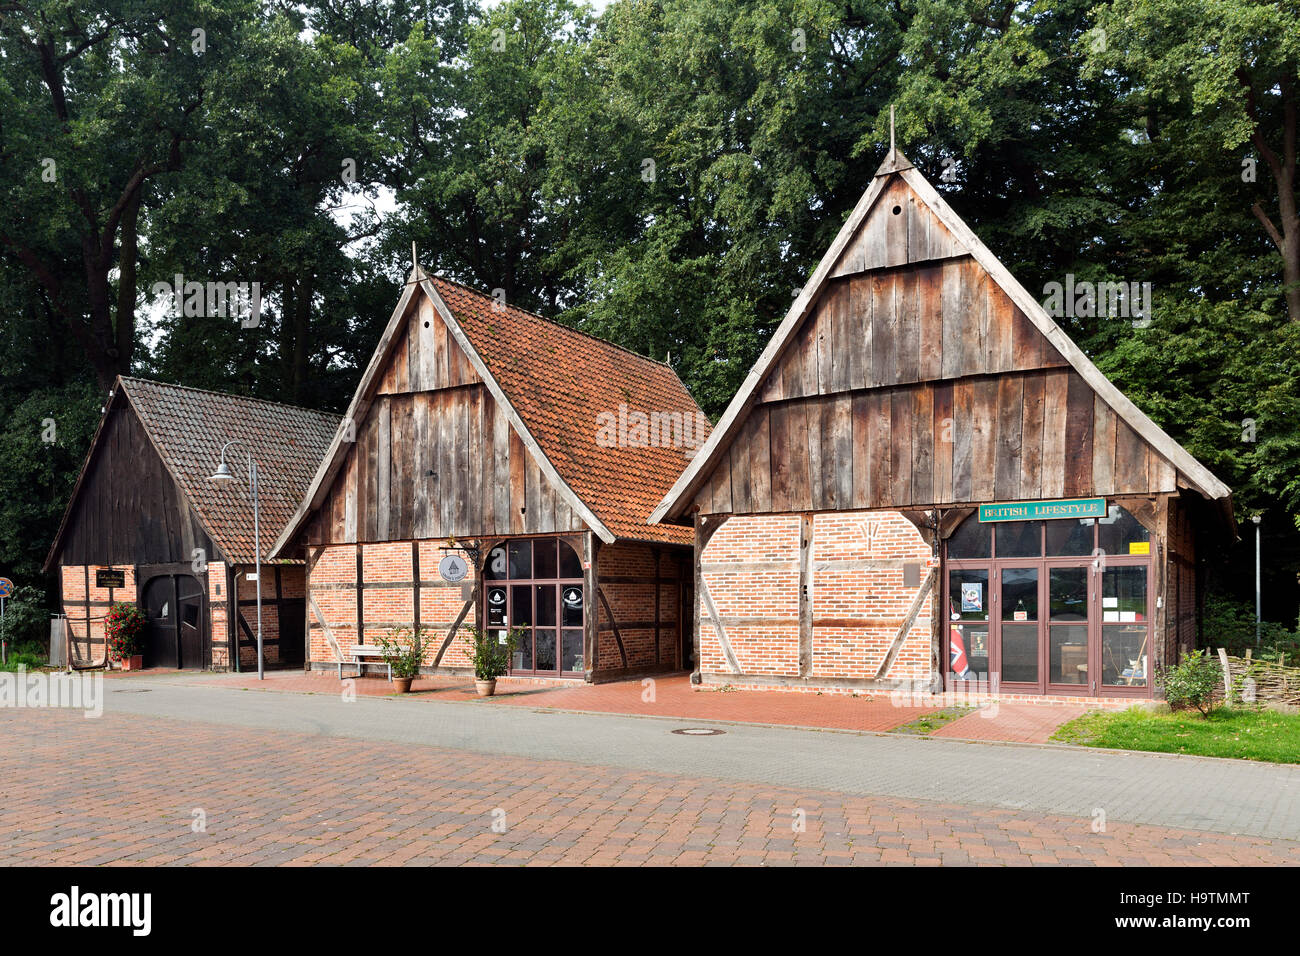 Il quartiere del granaio con gli storici granai in mezzo in legno stile, Steinhude, Wunstorf, Bassa Sassonia, Germania Foto Stock